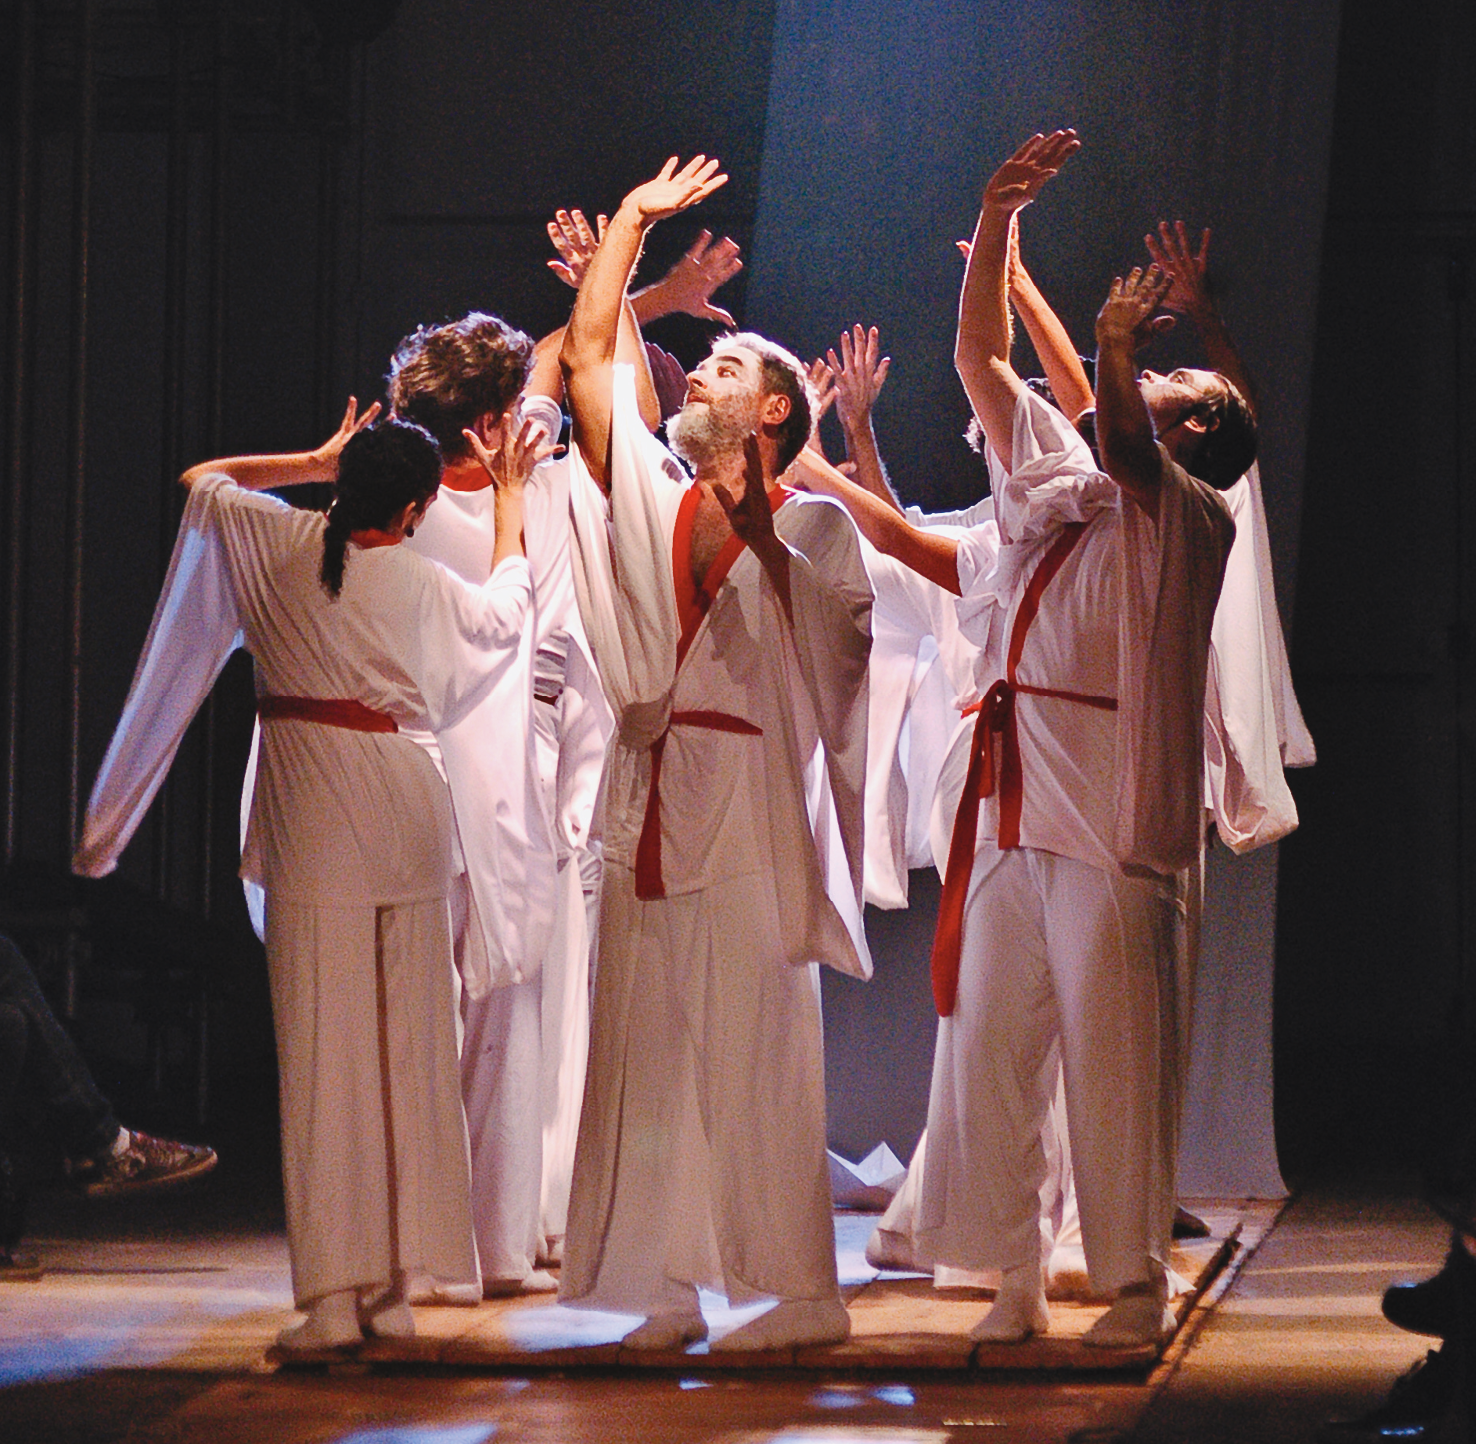 Fotografia. Espetáculo de teatro. Um grupo de atores vestindo quimono branco com faixas vermelhas em torno da cintura. Eles estão em pé sobre um tablado de madeira, com os braços para cima e as mãos espalmadas. A cena é iluminada por um facho de luz.